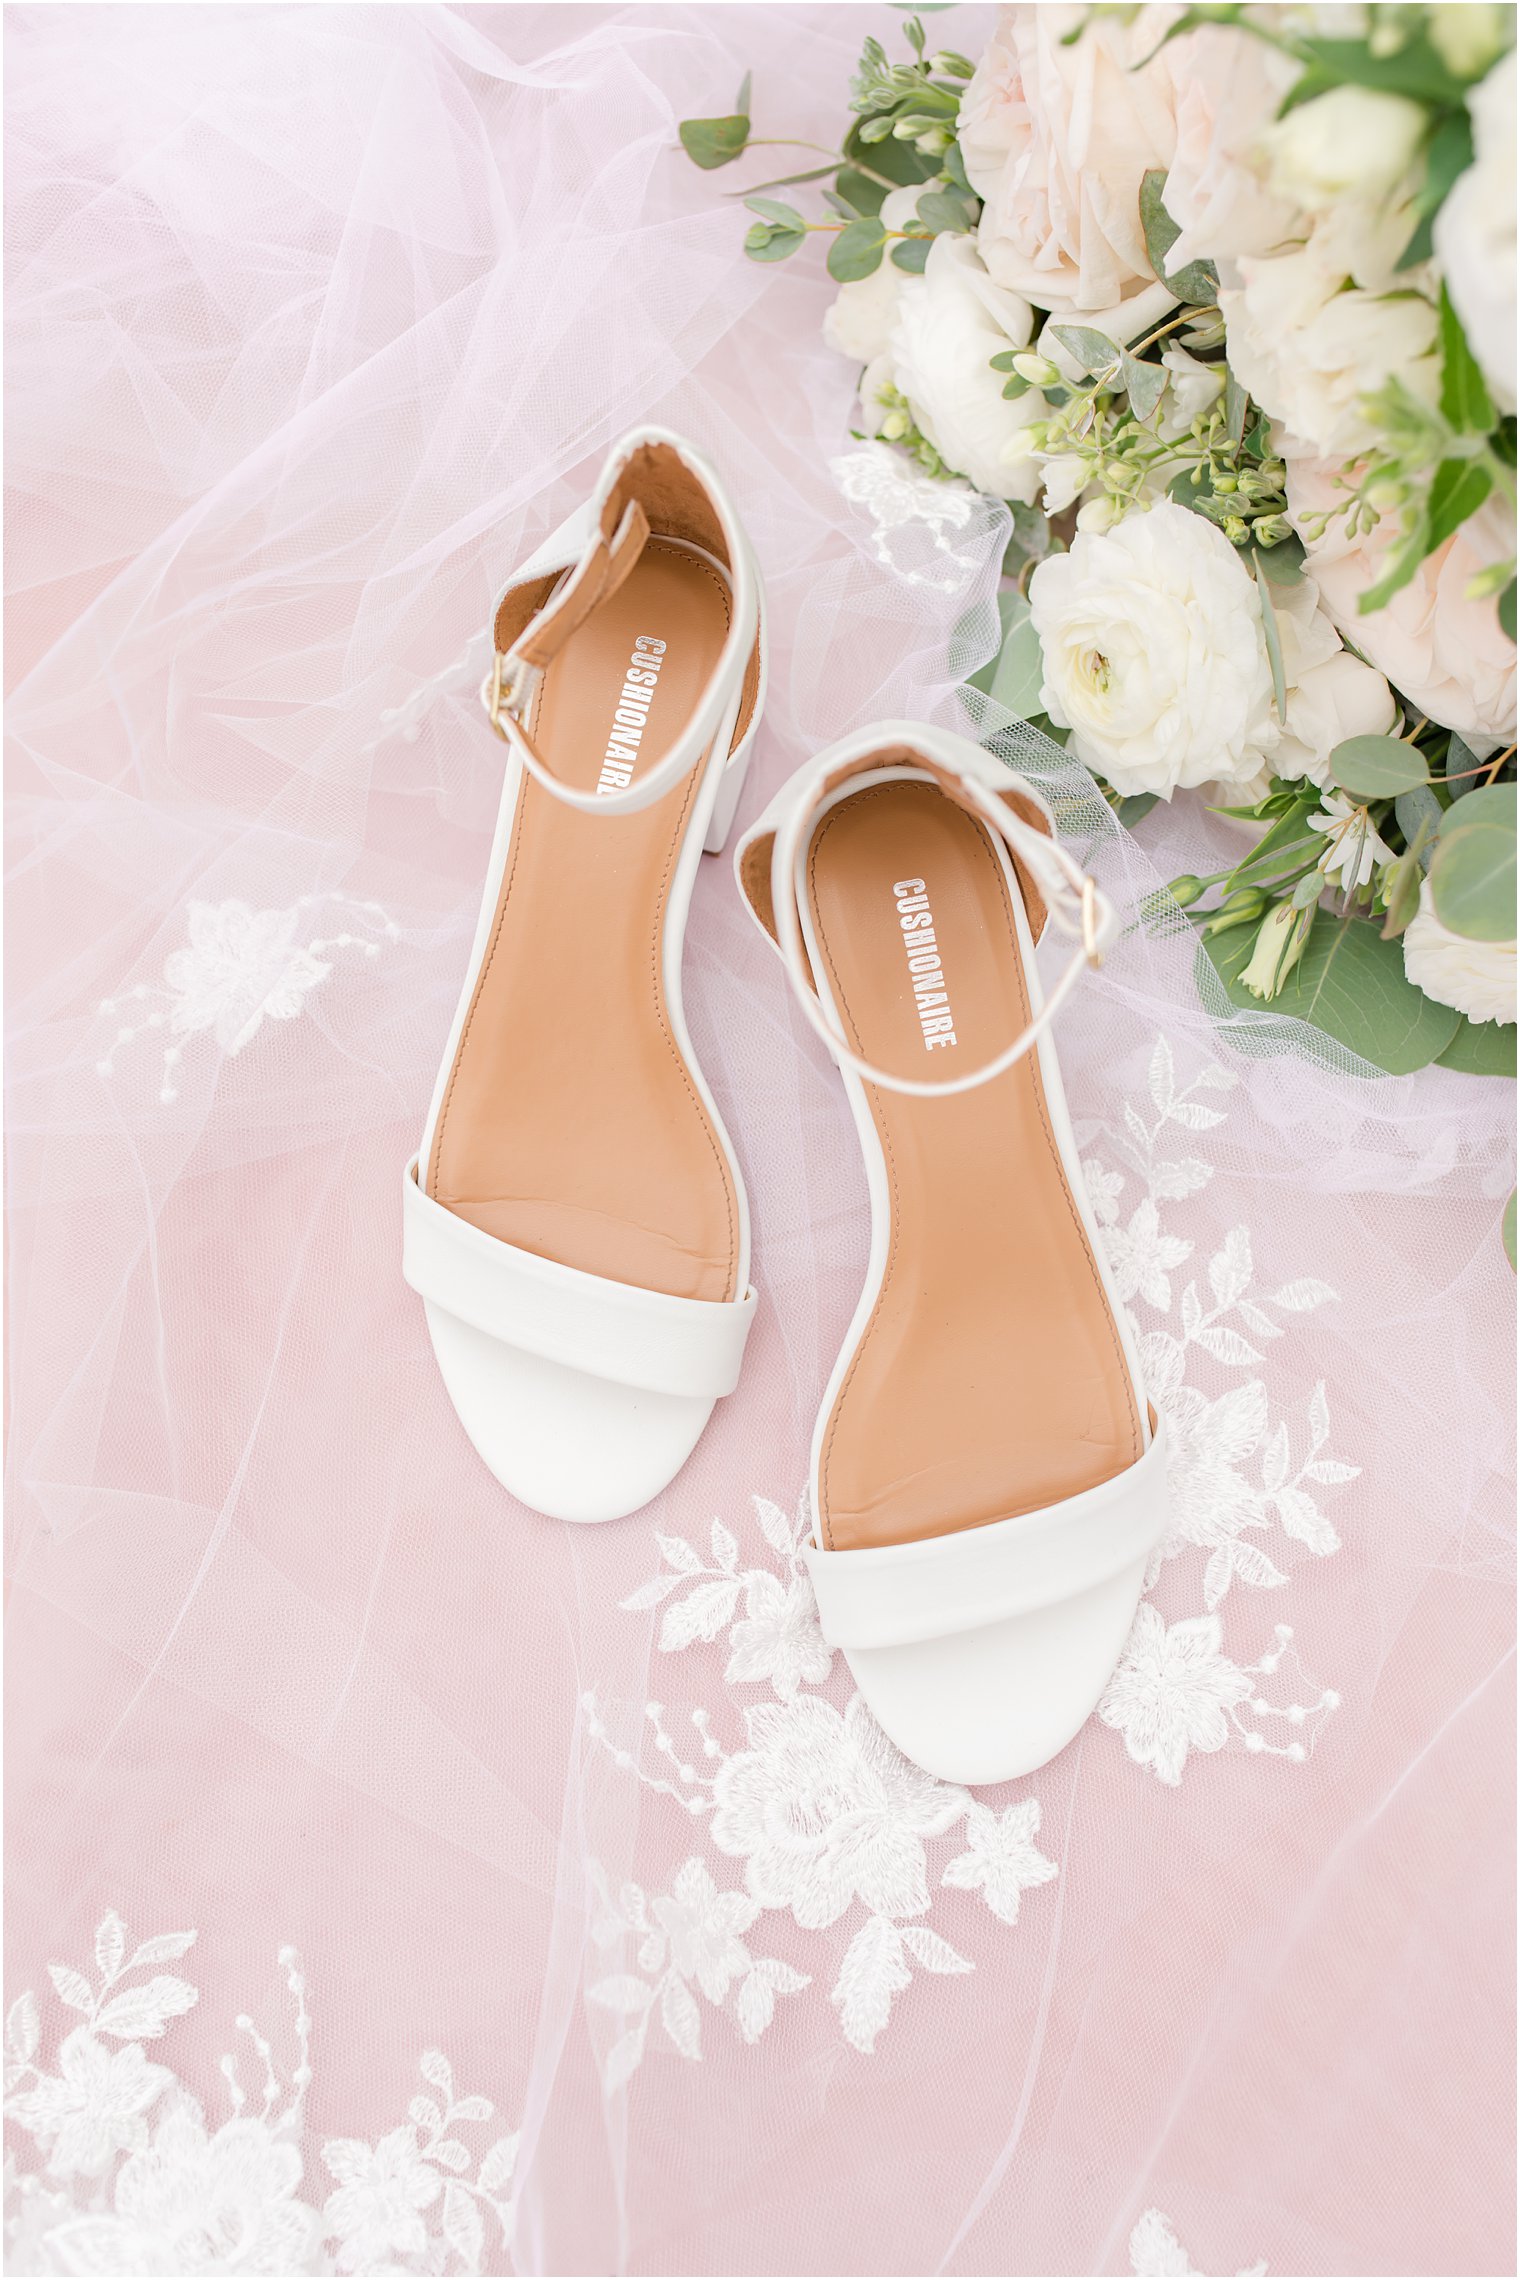 bride's white shoes rest on lace veil 